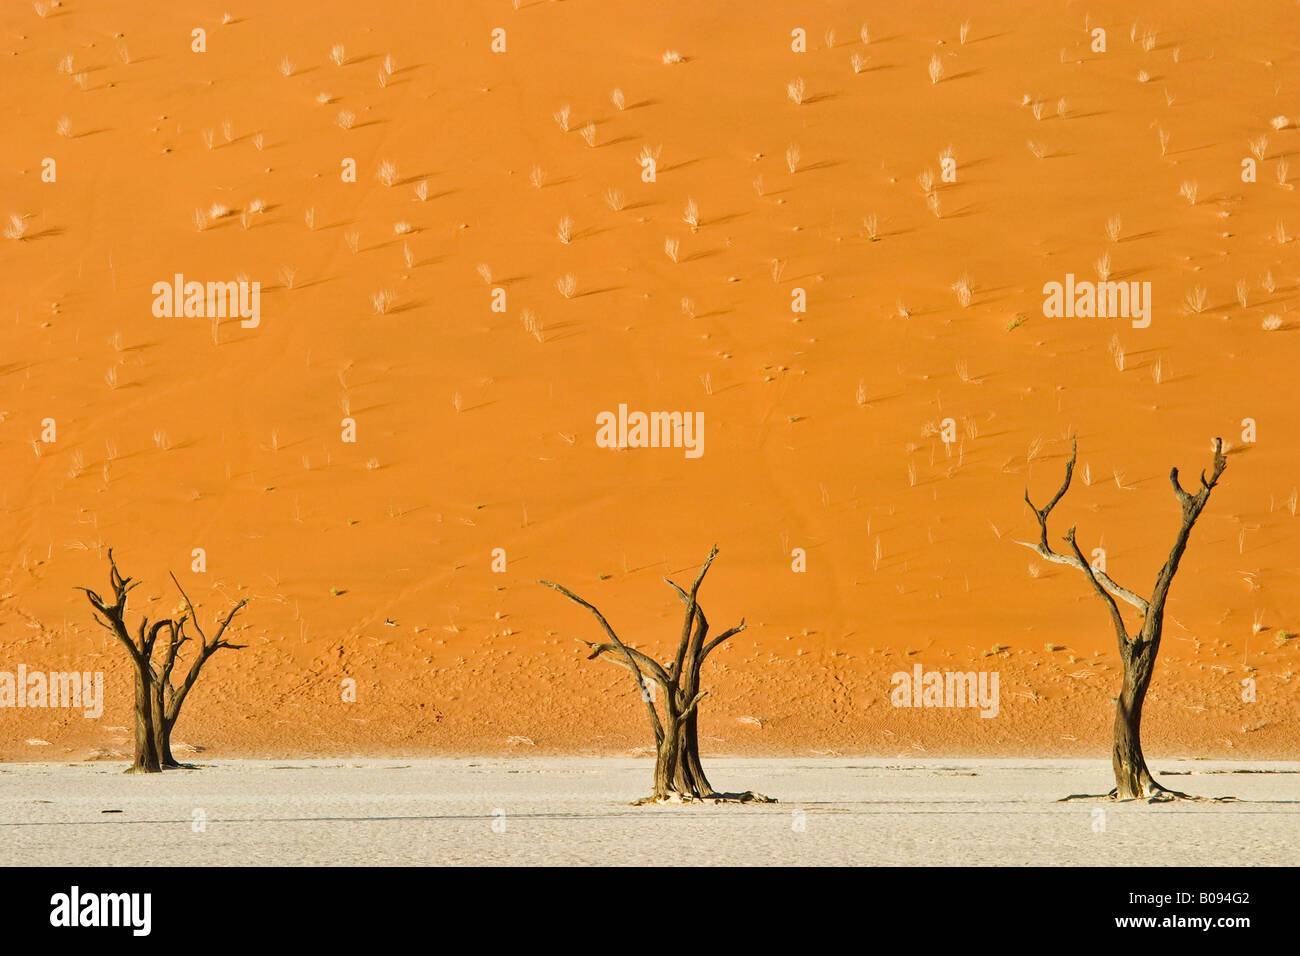 Dead trees in Deadvlei still reaching from dry white clay pan before rising orange desert sand dunes, Sossusvlei, Namib Desert, Stock Photo